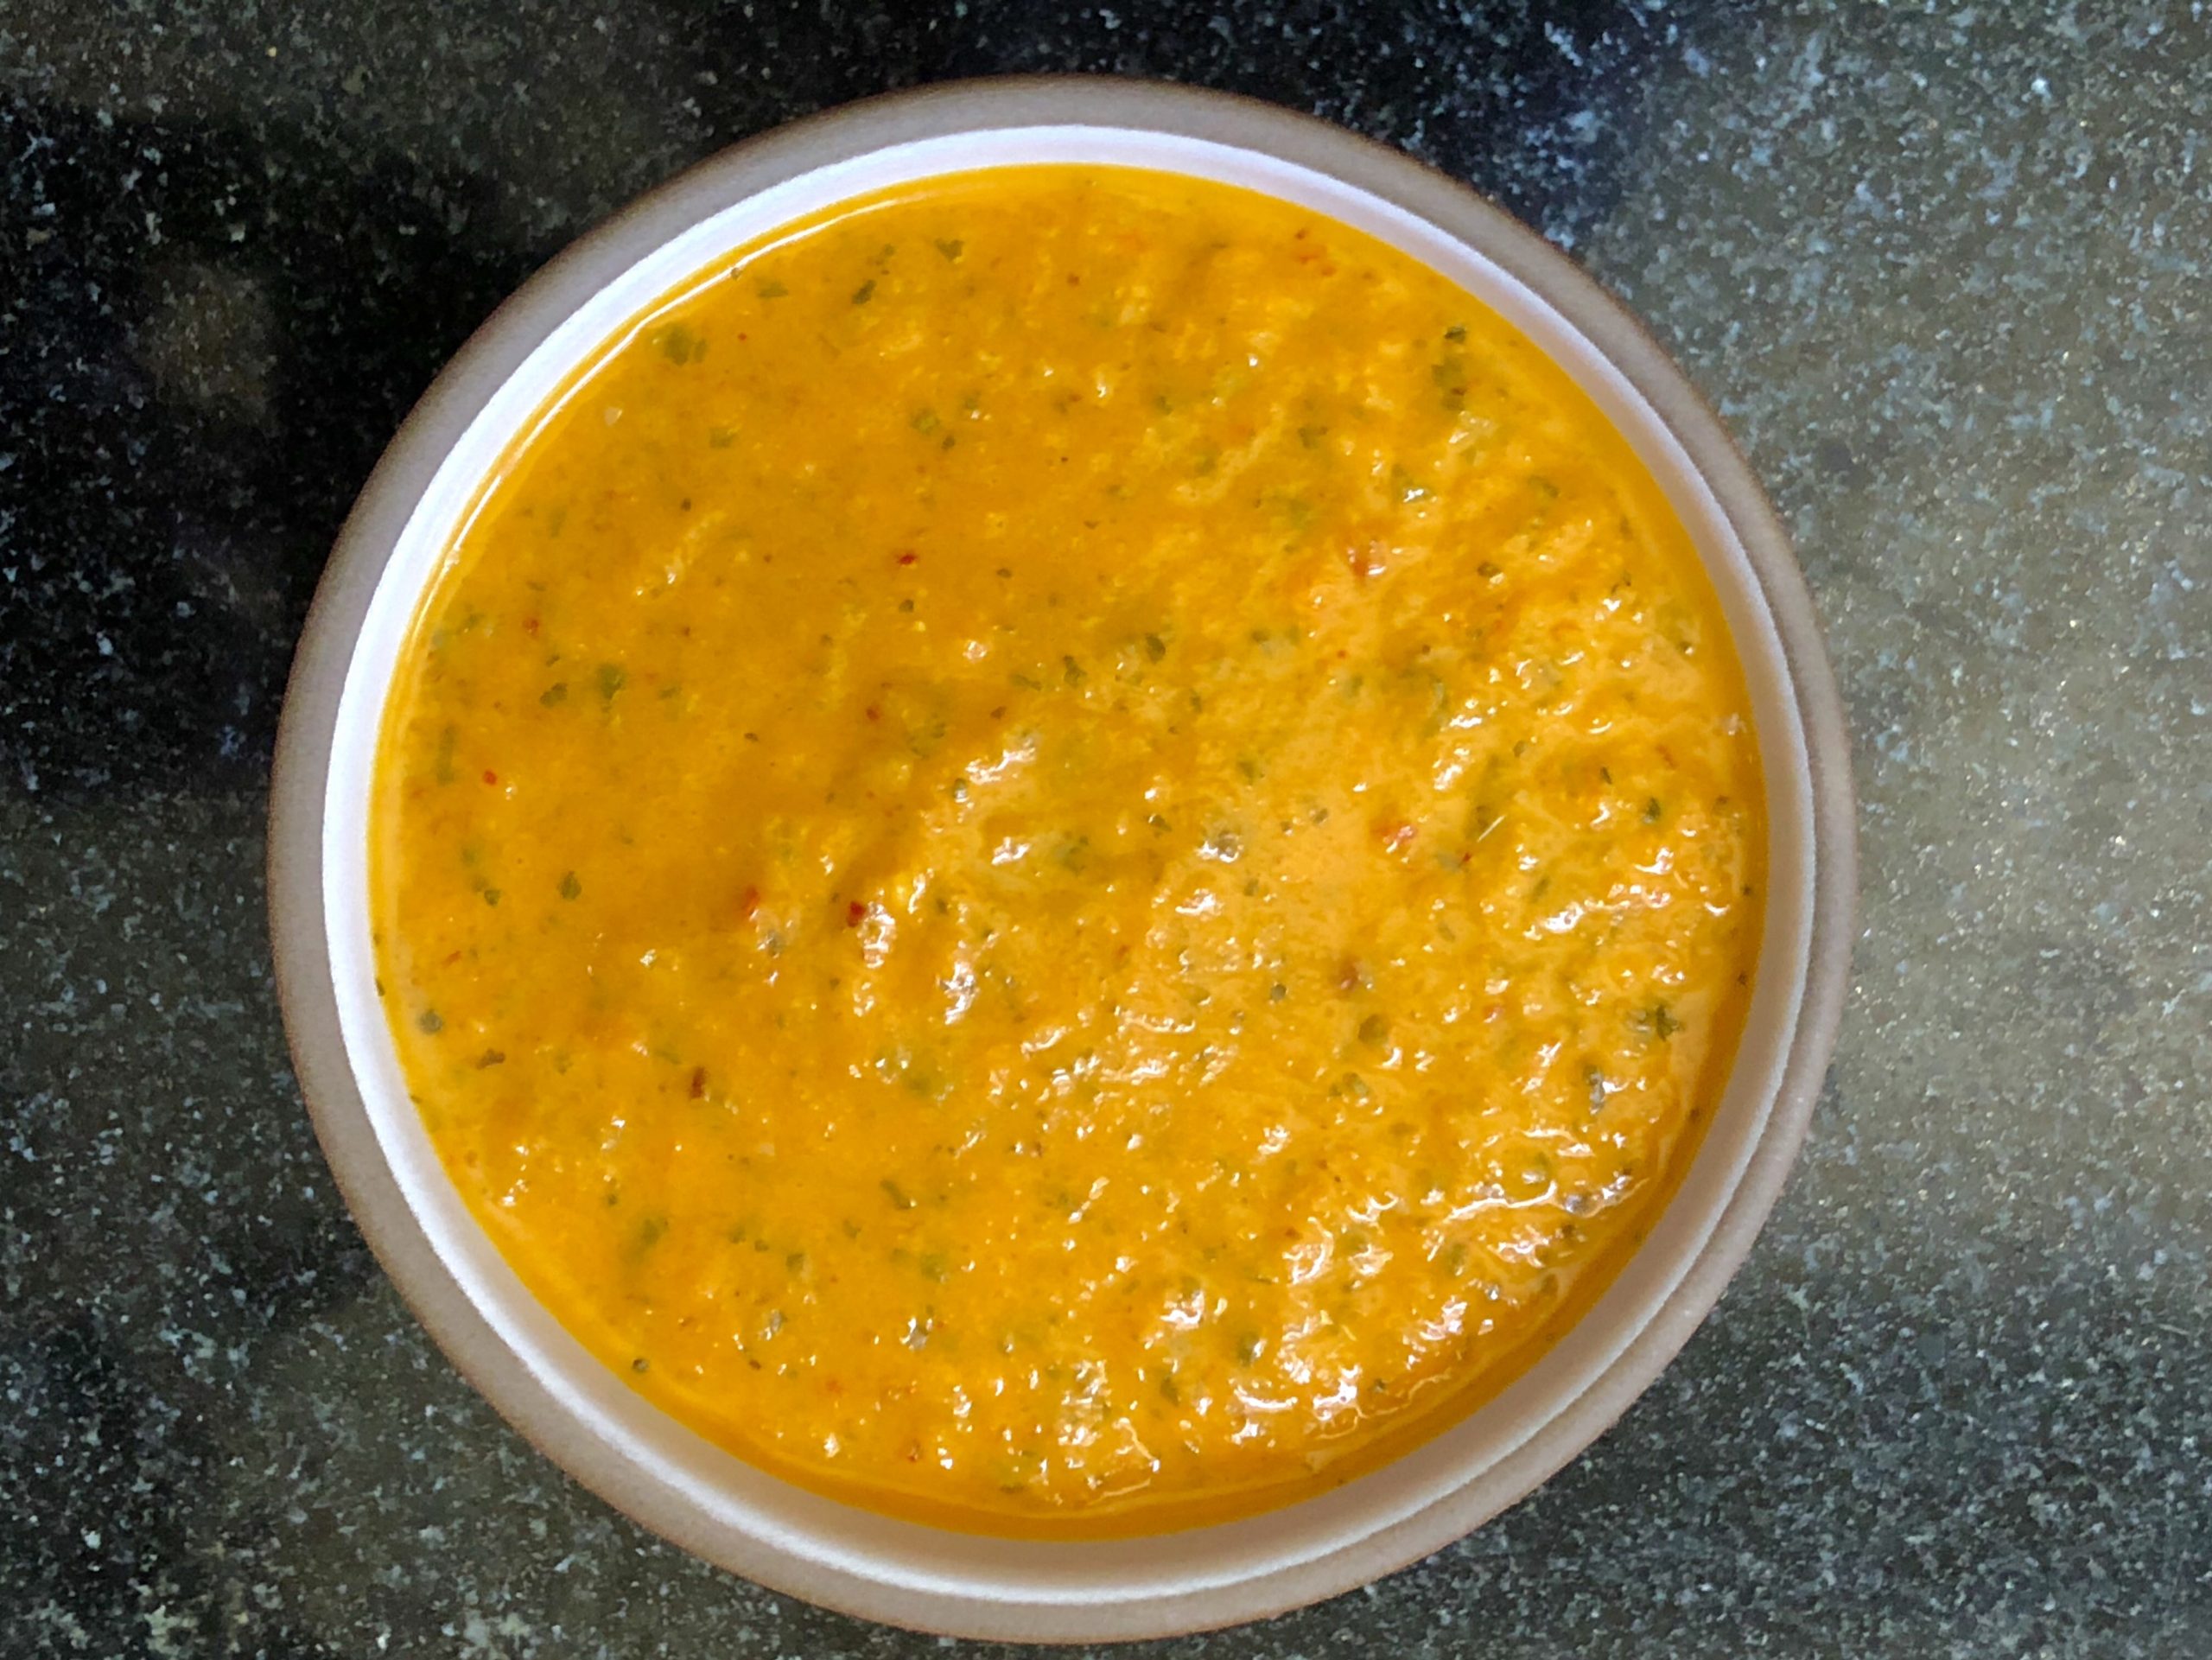 Yellow pepper/cilantro salsa